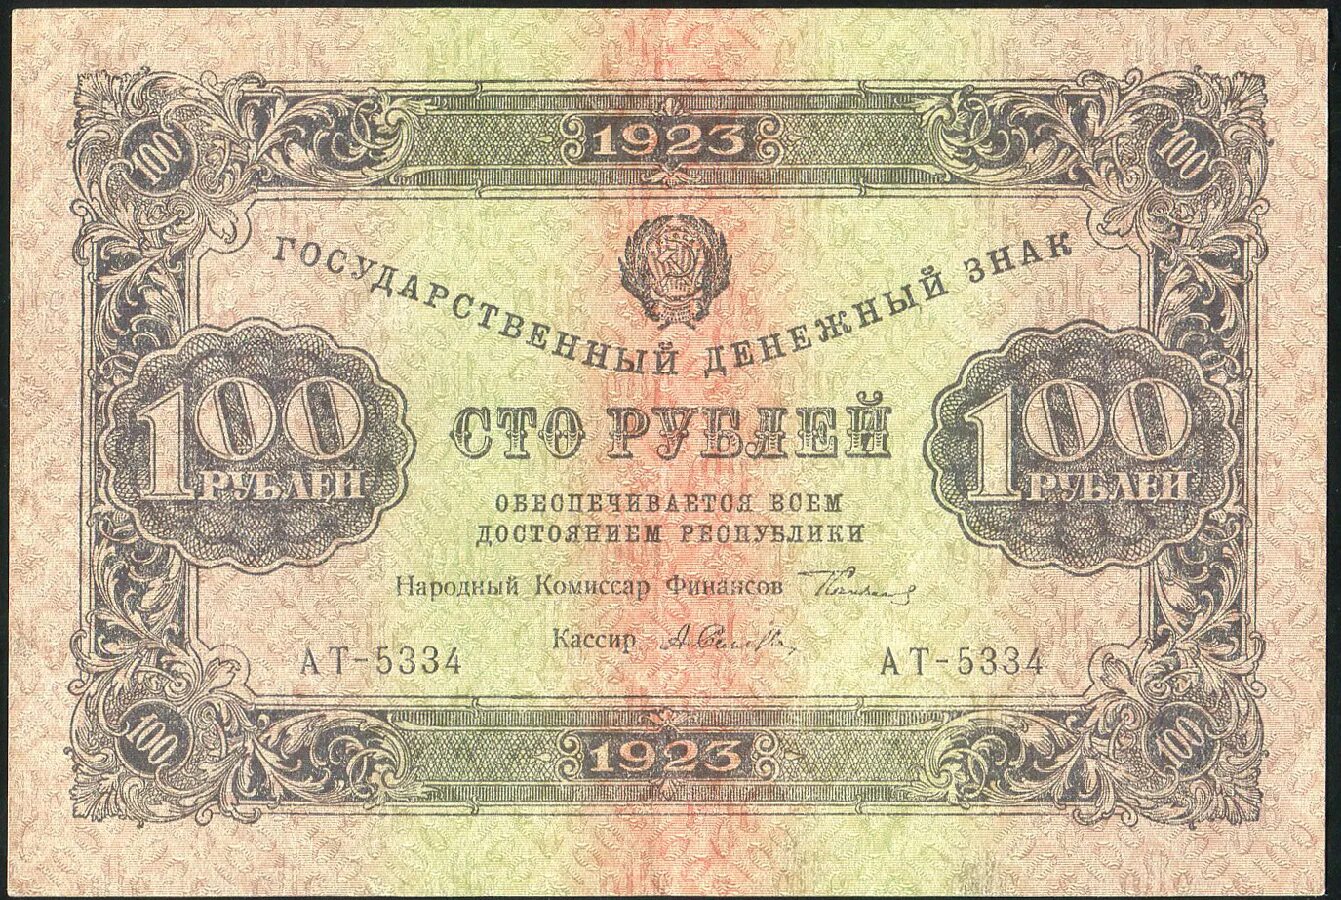 100 Рублей 1923 года. Банкнота 250 рублей. 250 Рублей 1923. Советская банкнота 100 рублей. Двести пятьдесят первый